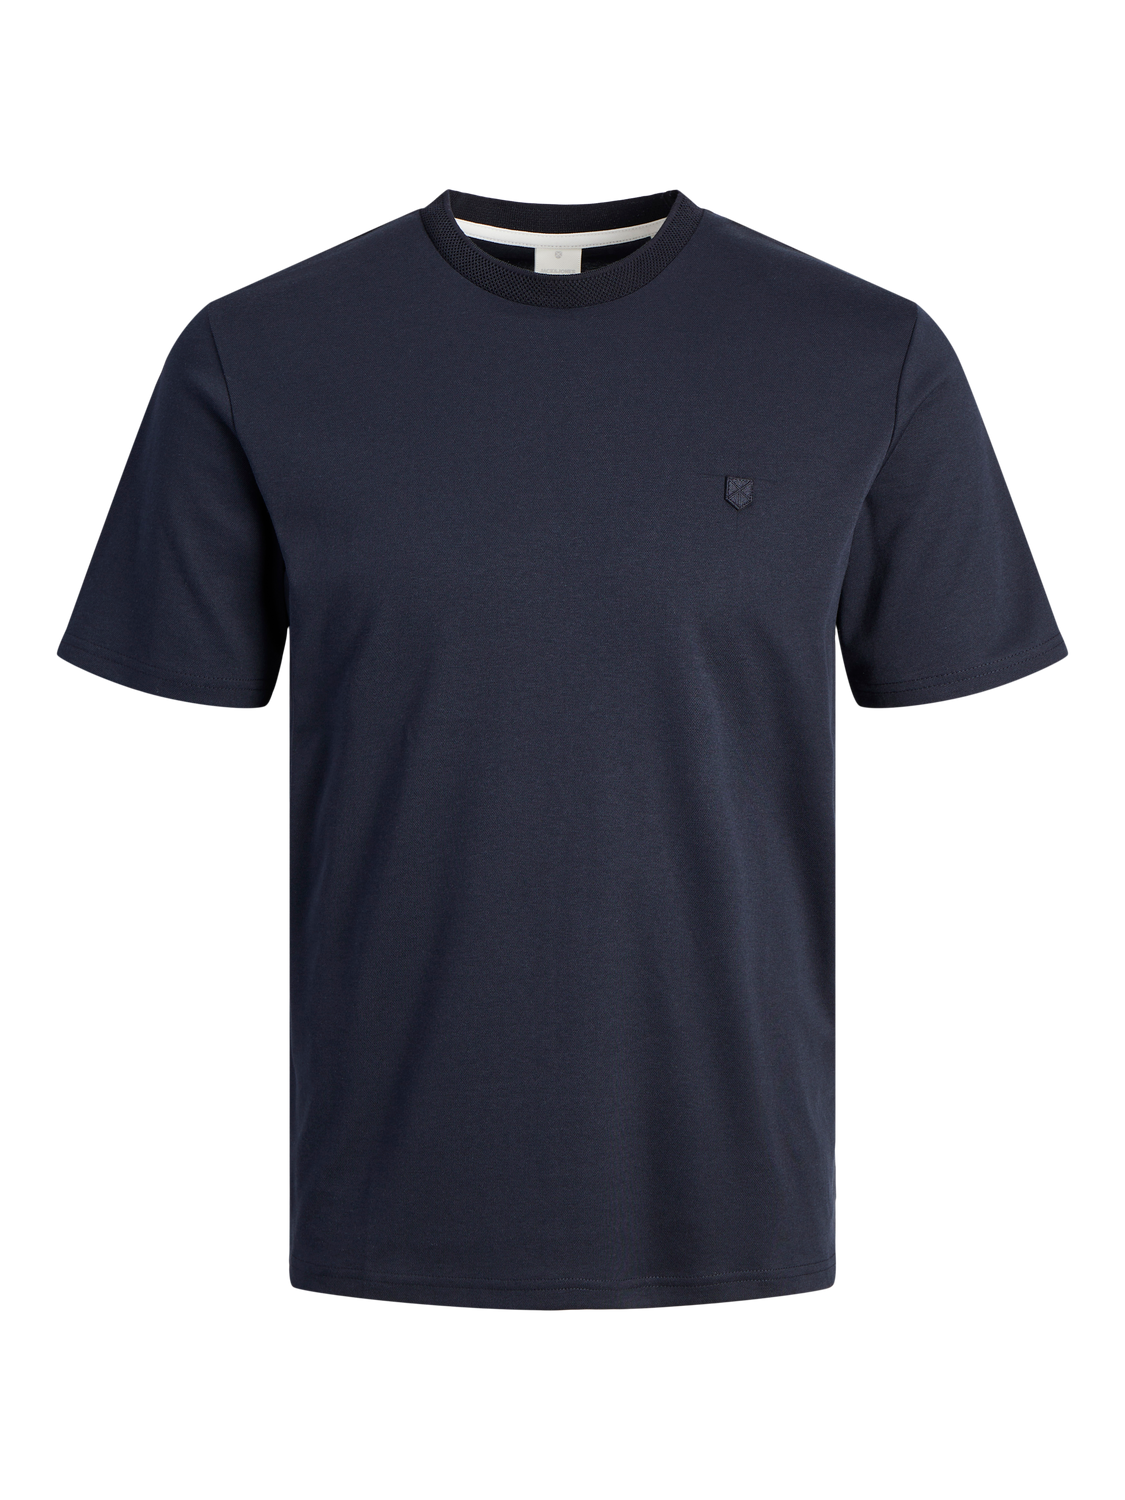 Camiseta manga corta azul marino - JPRCCRODNEY